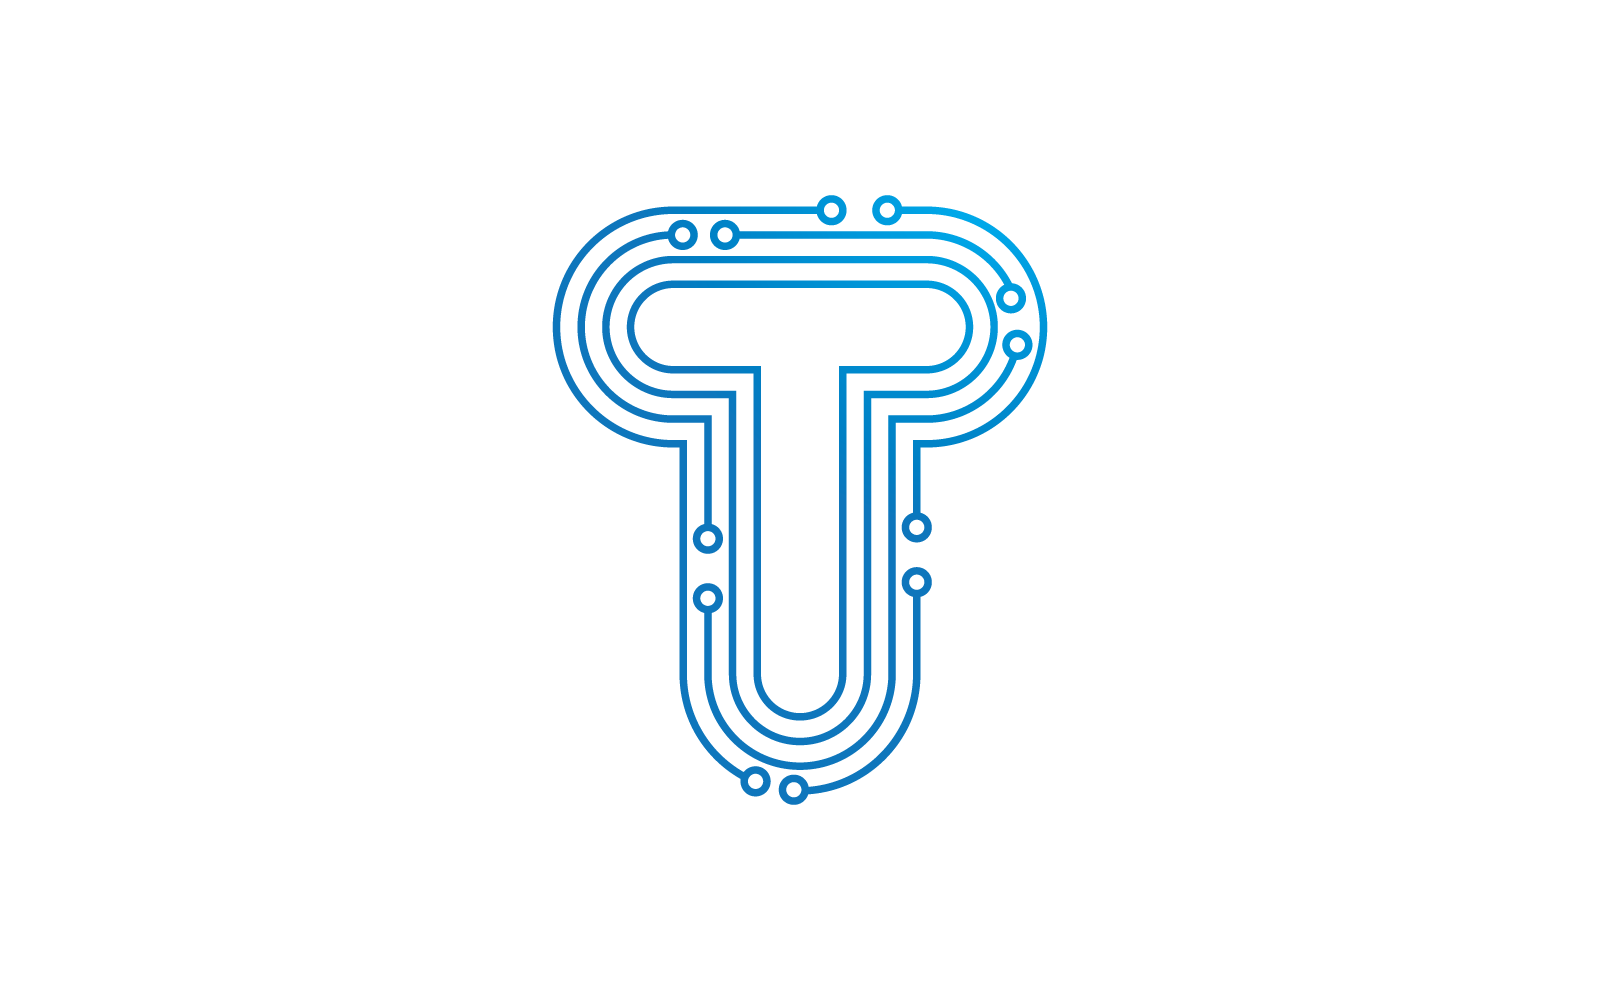 T 首字母电路技术插图徽标矢量模板